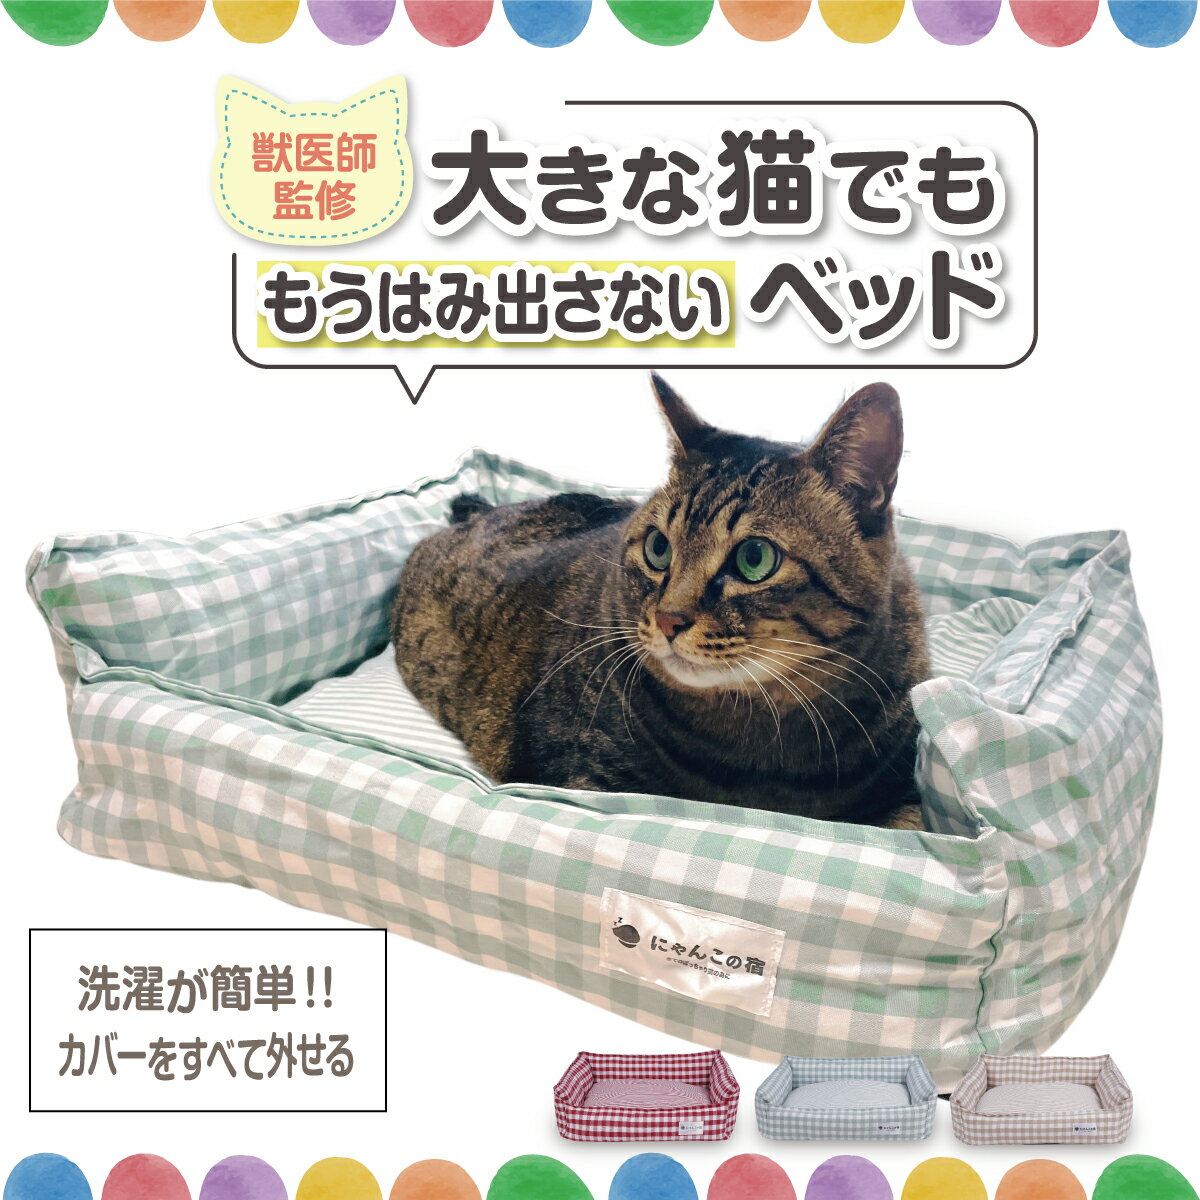 【獣医師監修】【大きな猫でもはみ出さない。洗濯が簡単.カバーをすべて外せる】 猫 ベッド ペットベッド クッション マット にゃんこの宿【猫ちゃんが気に入らなければ全額返金保証】